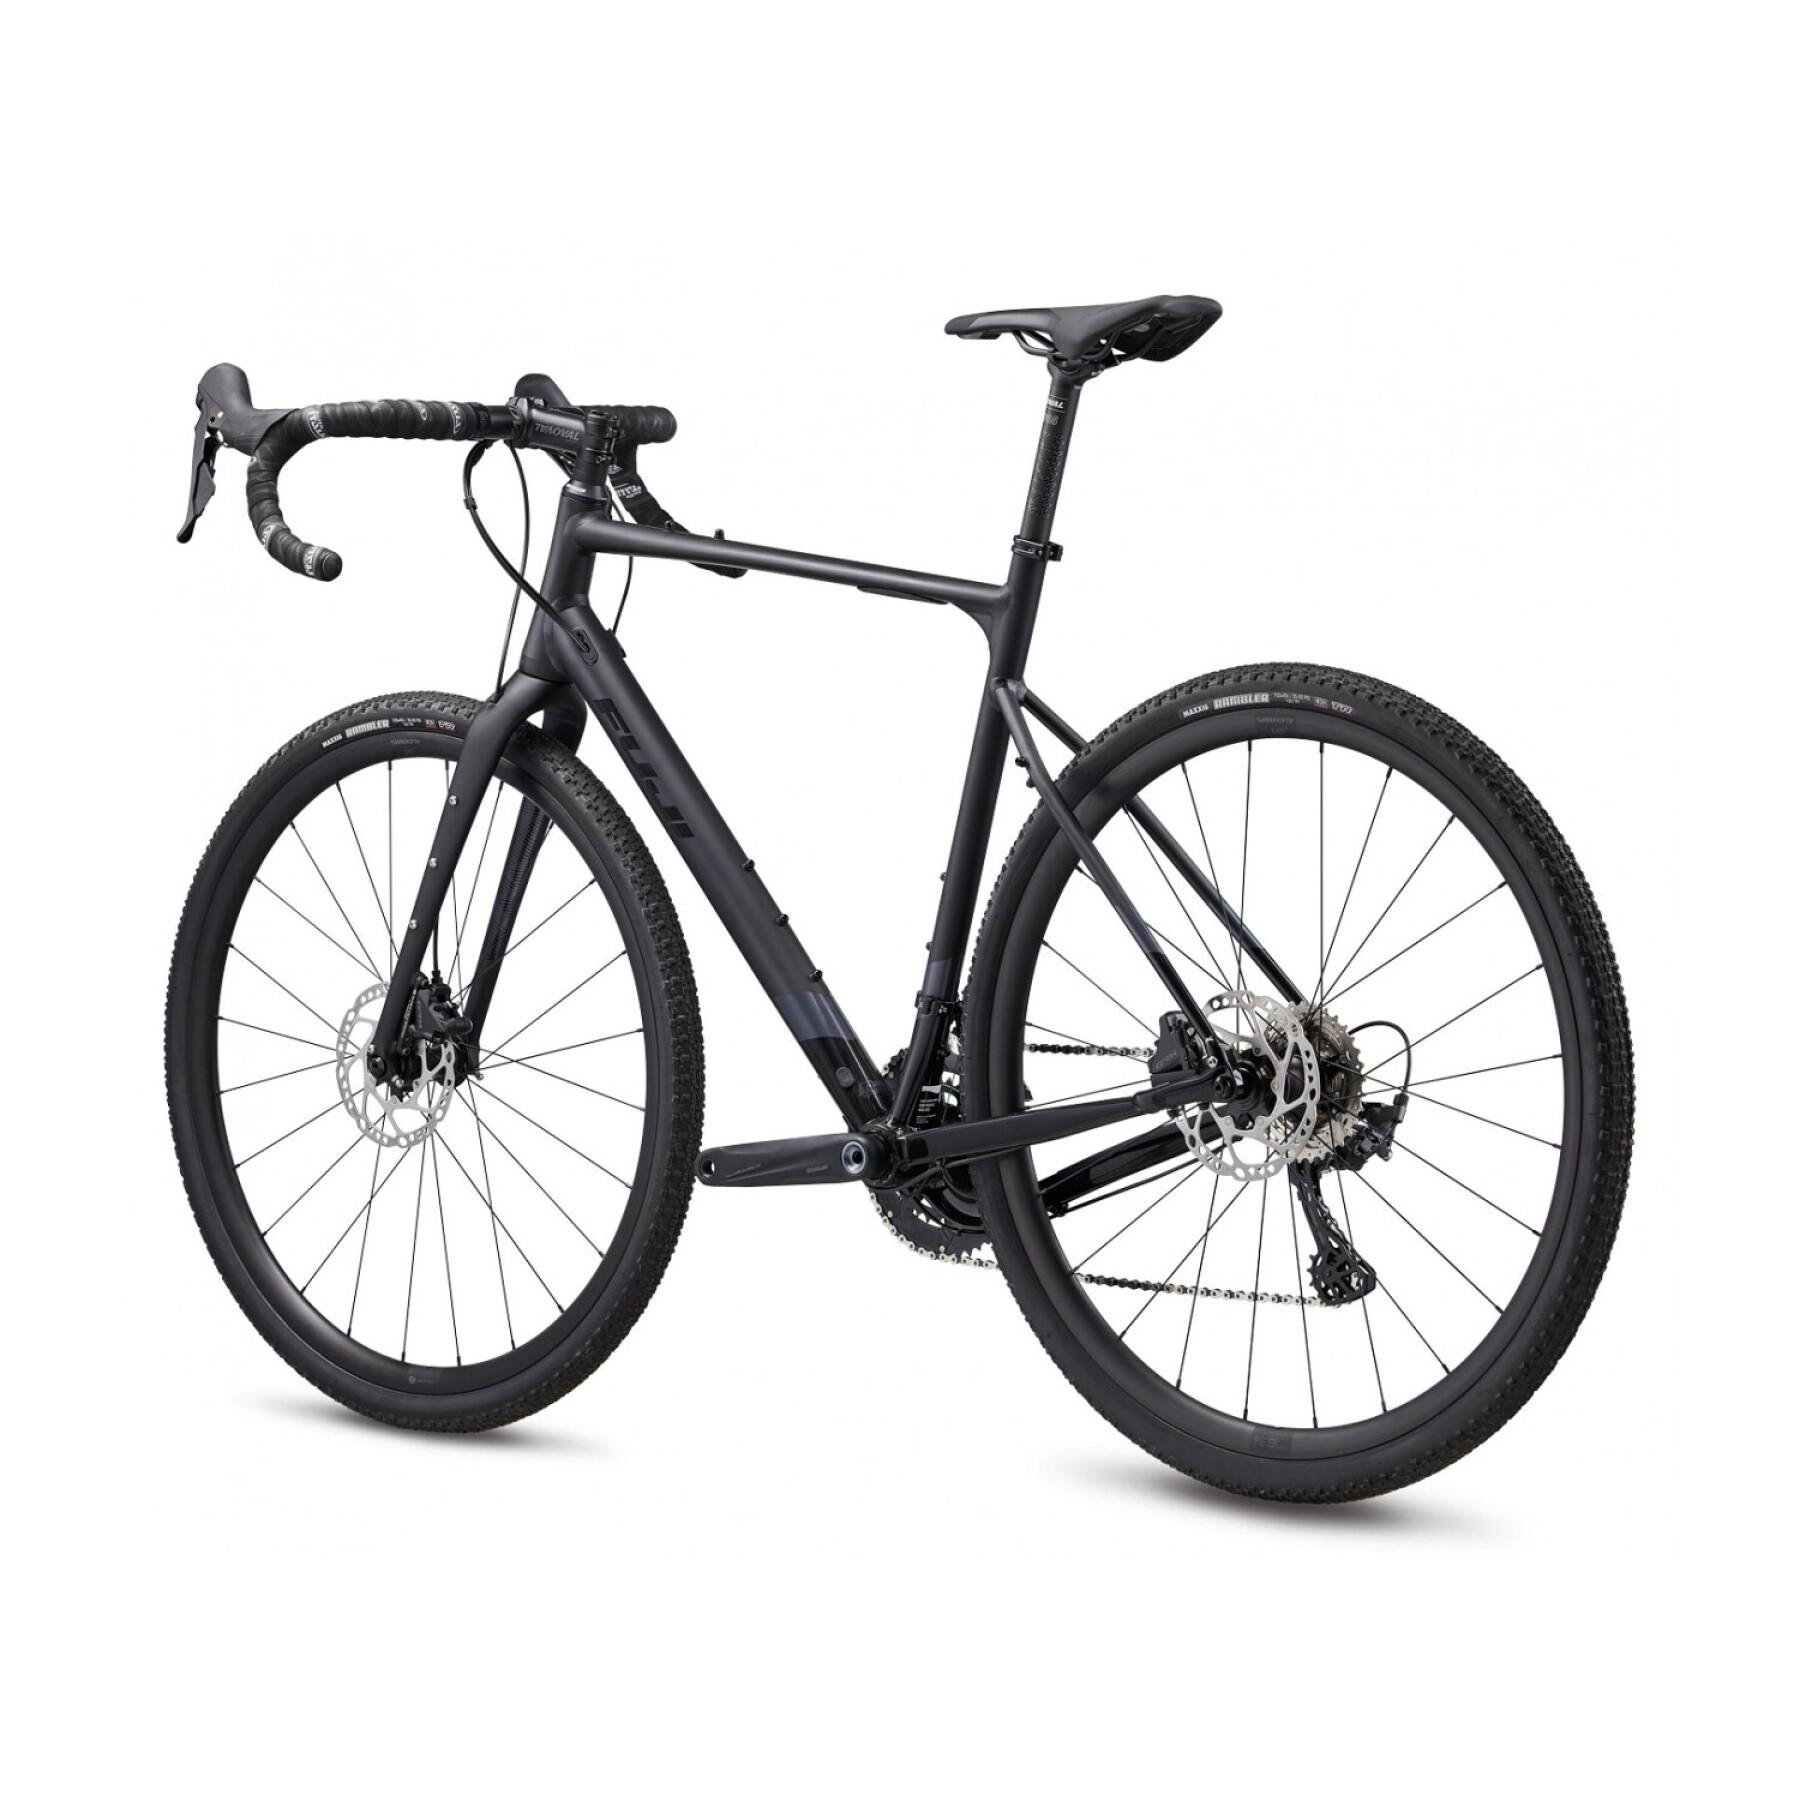 Bicicleta de cascalho Fuji Jari 1.1 GRX 2x11